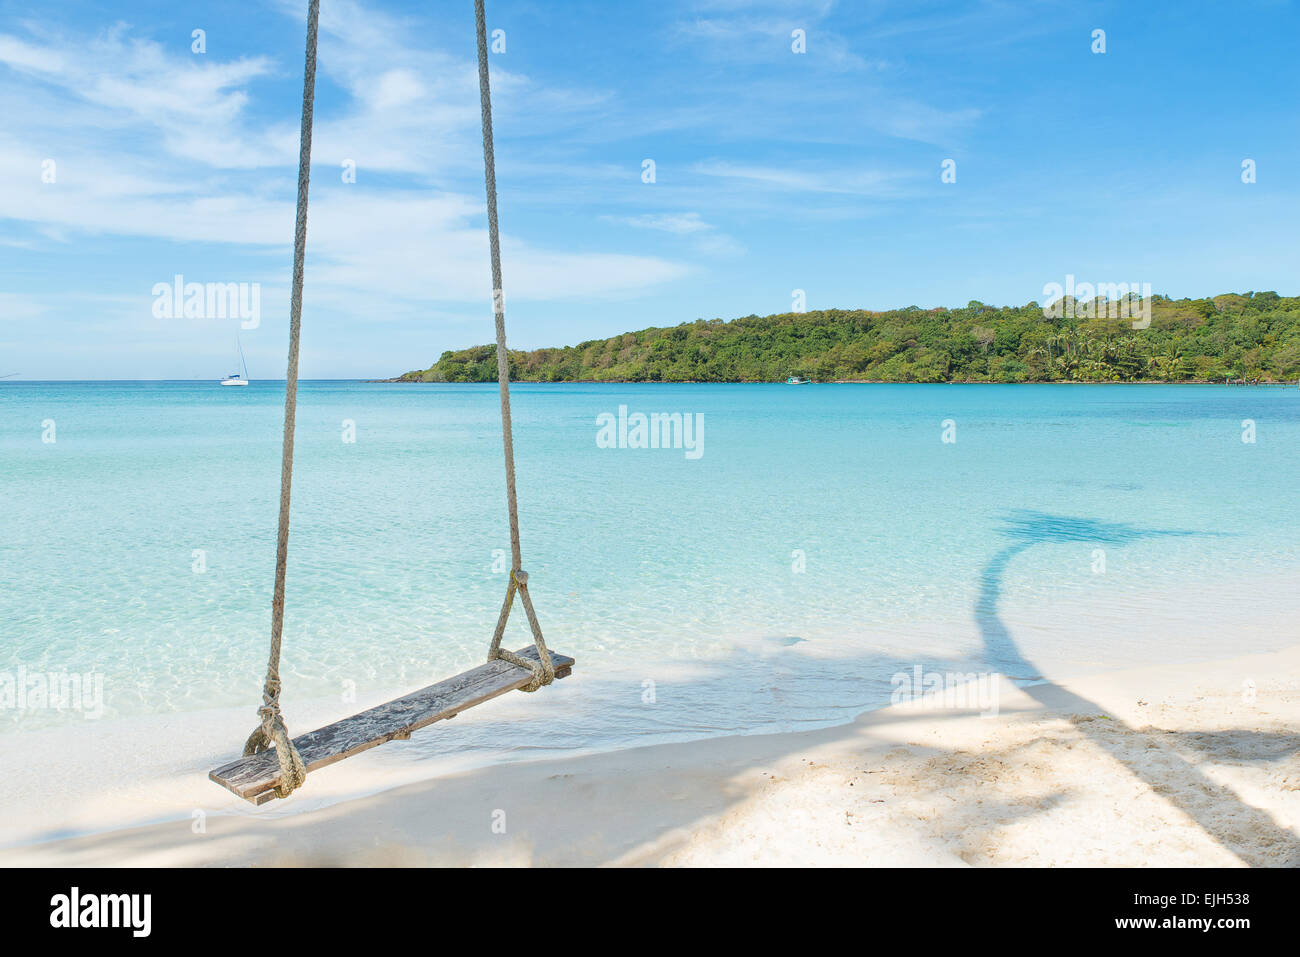 Sommer, Reisen, Urlaub und Ferien-Konzept - Schaukel hängen von Kokosnuss-Palme Strand Meer in Phuket, Thailand. Stockfoto